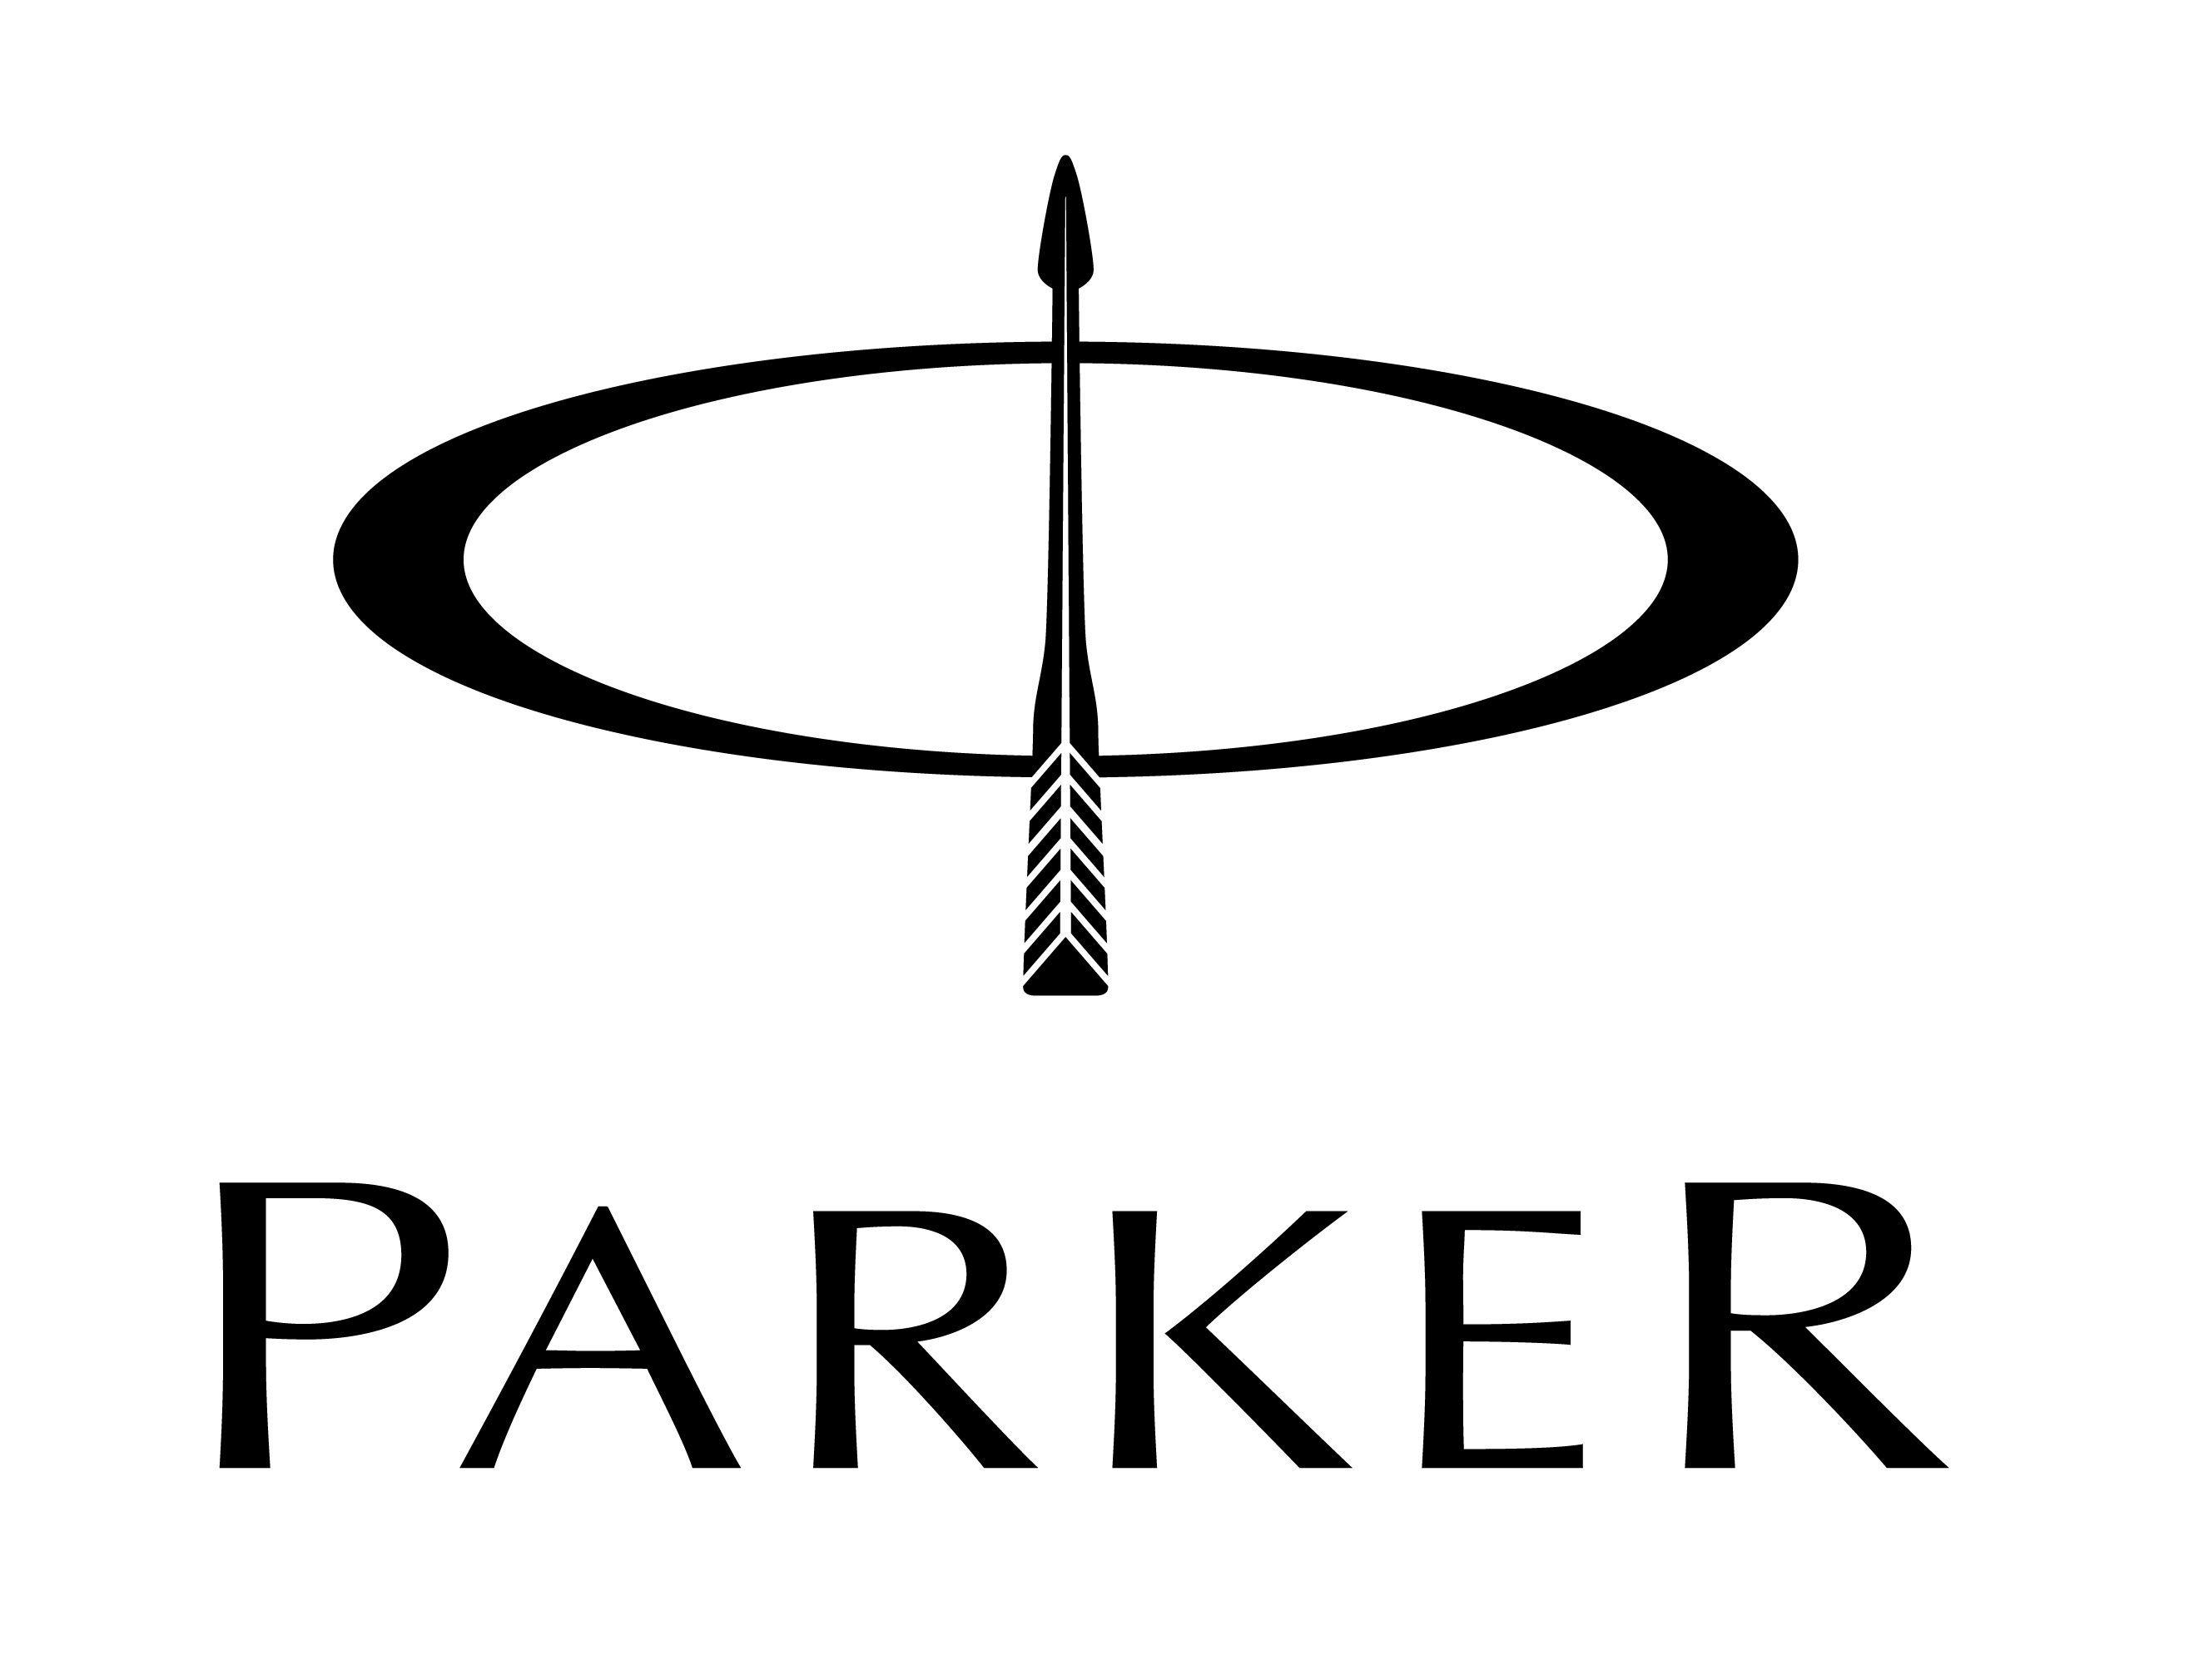 Parker Logo - Parker Pen Logo | Excellent international logo | Logos, Parker logo ...